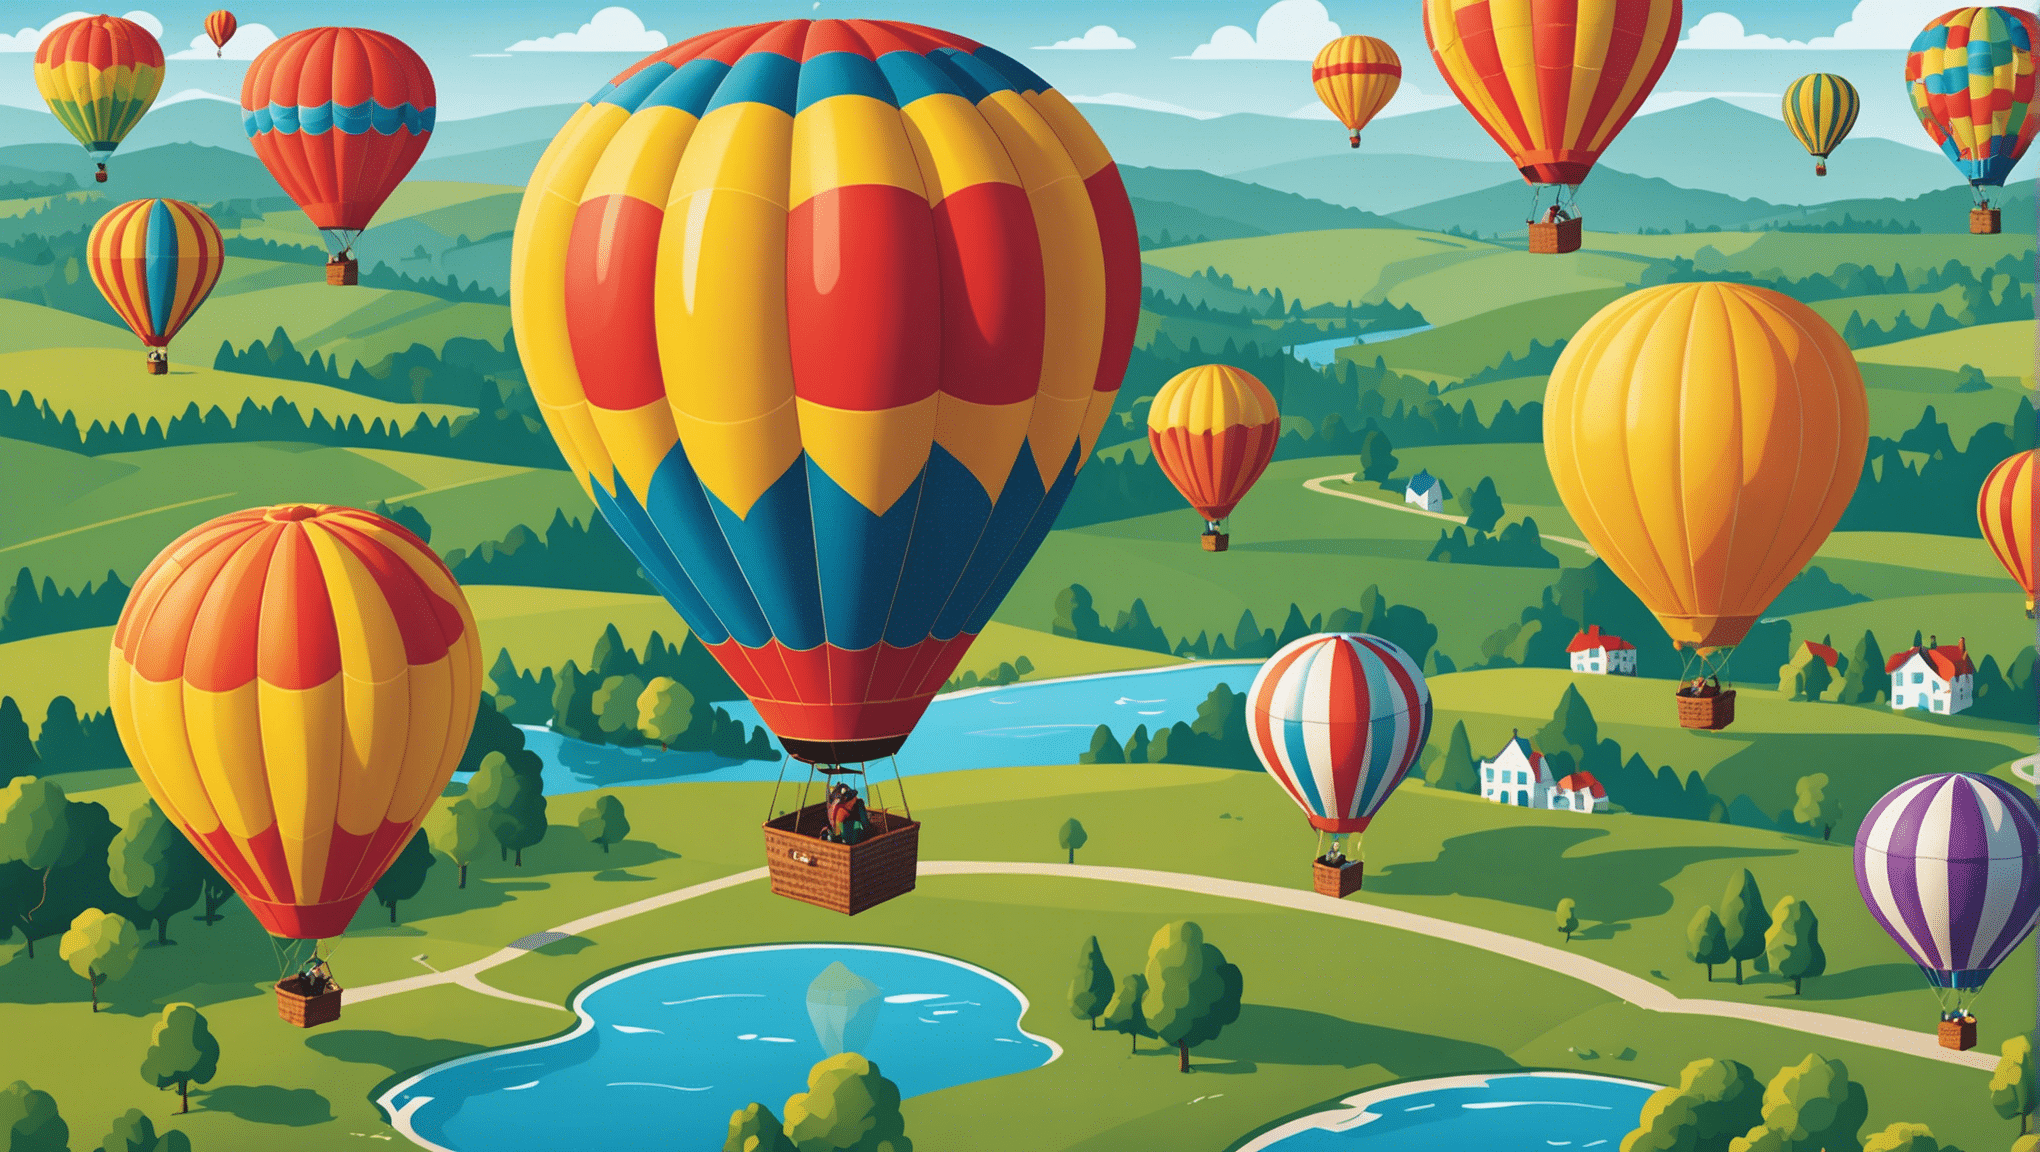 descubra experiências memoráveis ​​para viver durante passeios de balão com vistas deslumbrantes. reserve já a sua aventura!